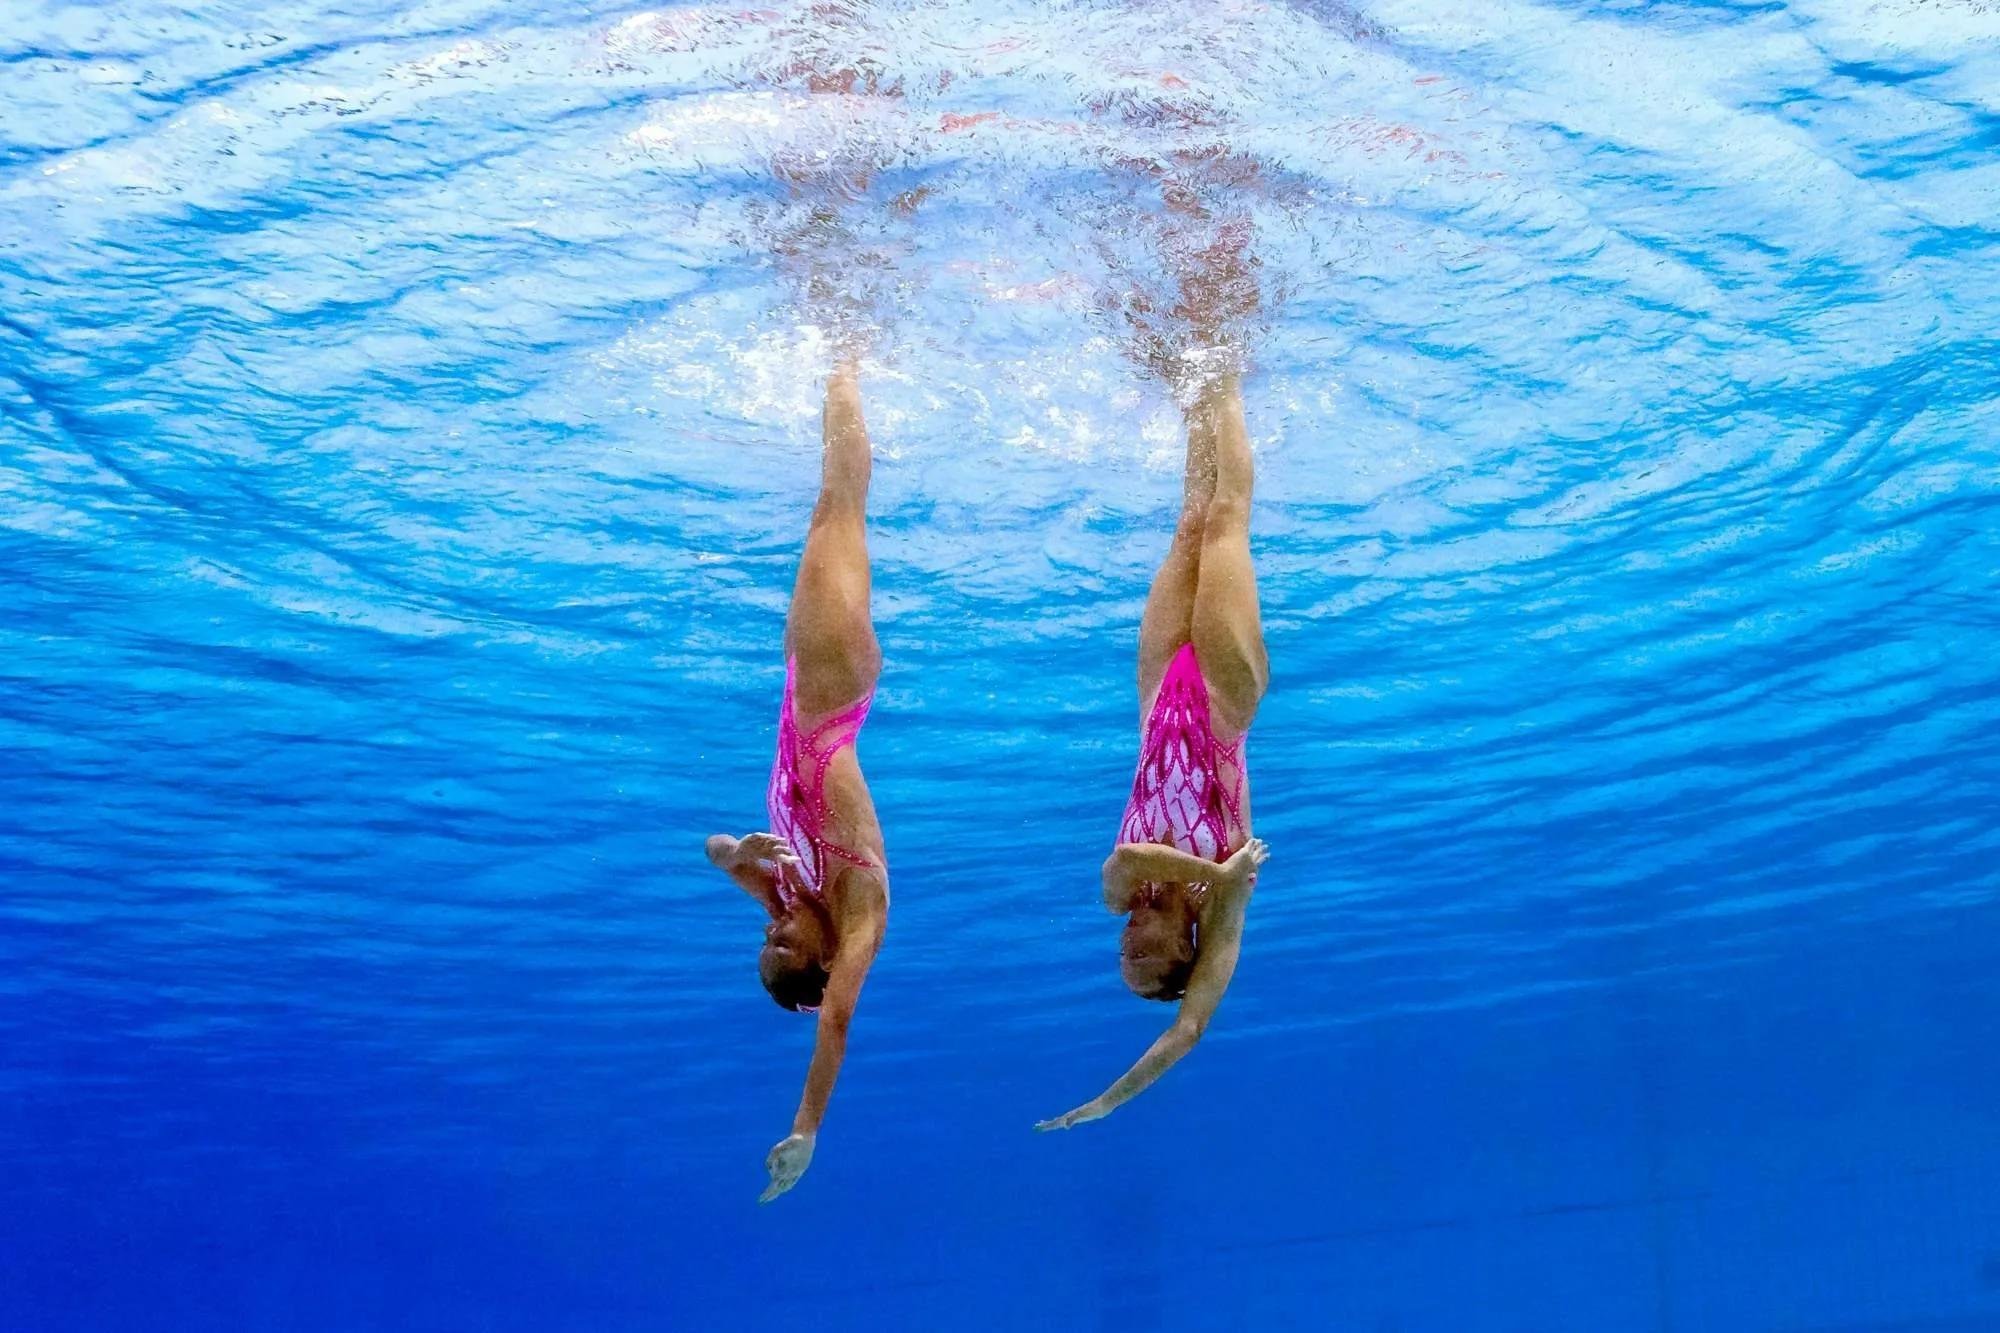 Результат синхронного плавания. Эйфель синхронное плавание. Синхронное плавание под водой. Синхронное плавание красивые. Прыжки в воду синхронное плавание.